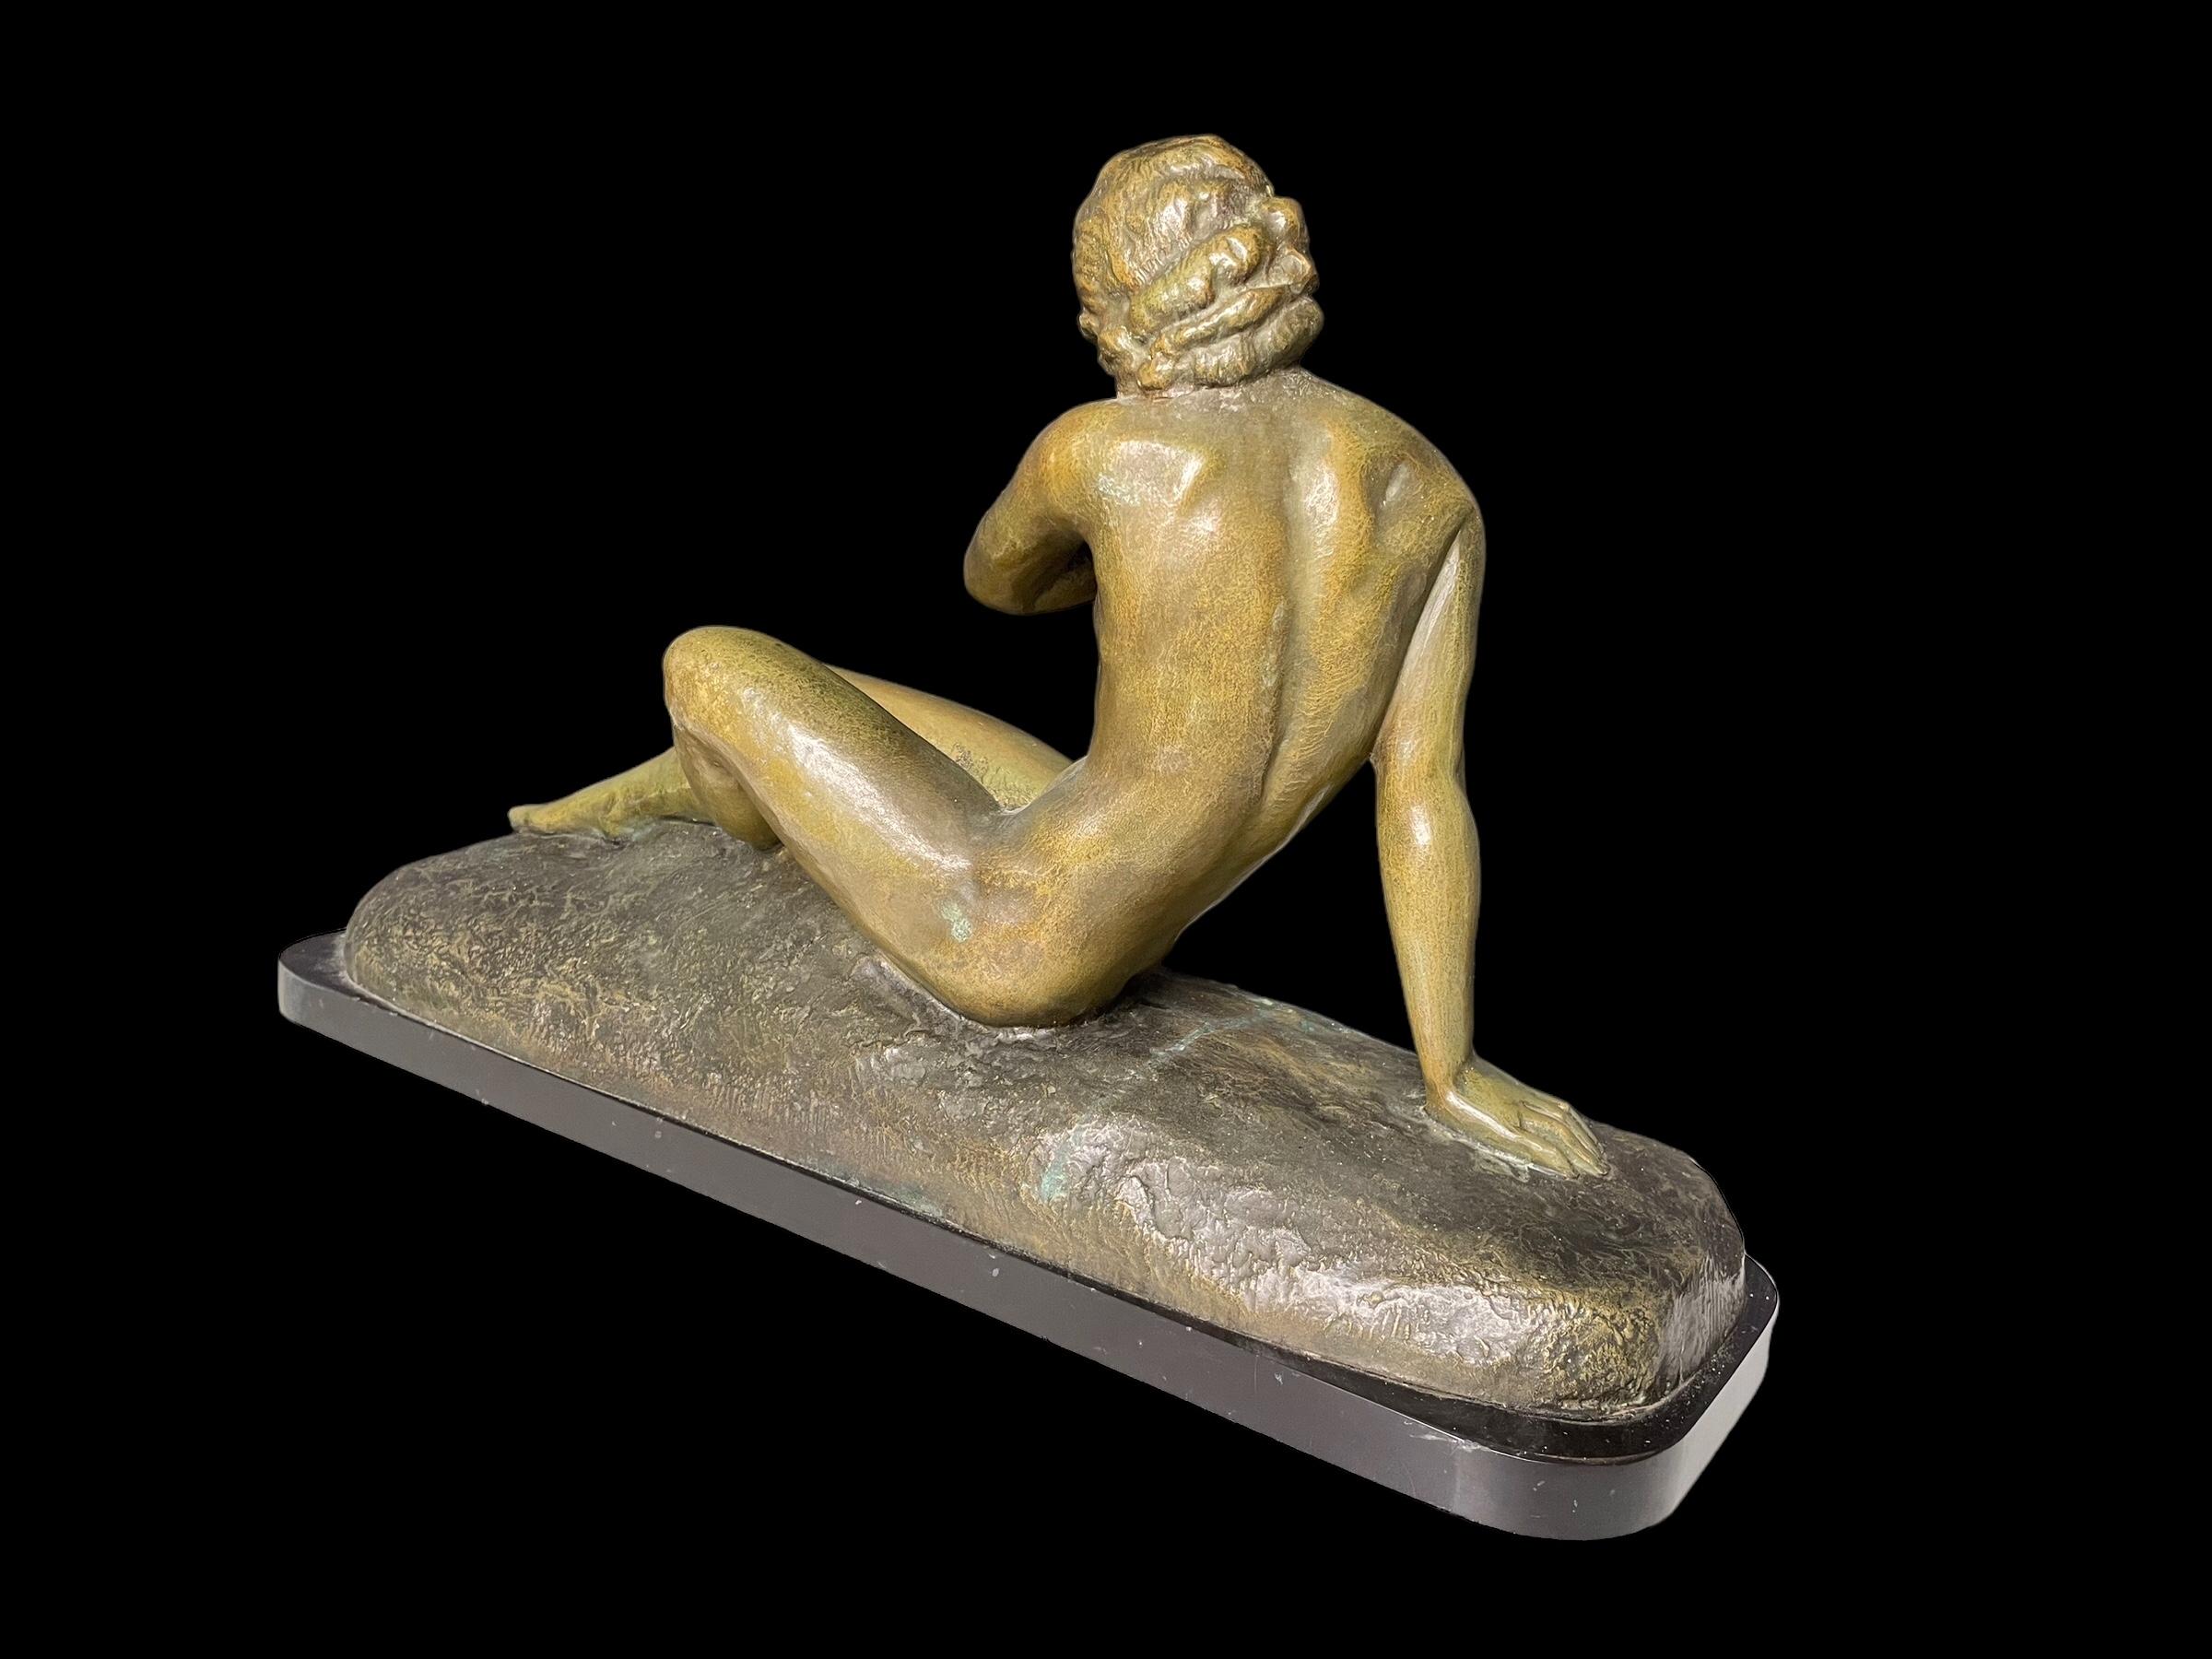 Un beau et grand bronze en patine verte, par l'important sculpteur de l'Art déco, Ugo Cipriani.
Un bel exemple de nu couché classique stylisé. Sa posture, son visage, ses mains et ses pieds sont tous exécutés de façon magistrale. La signature de